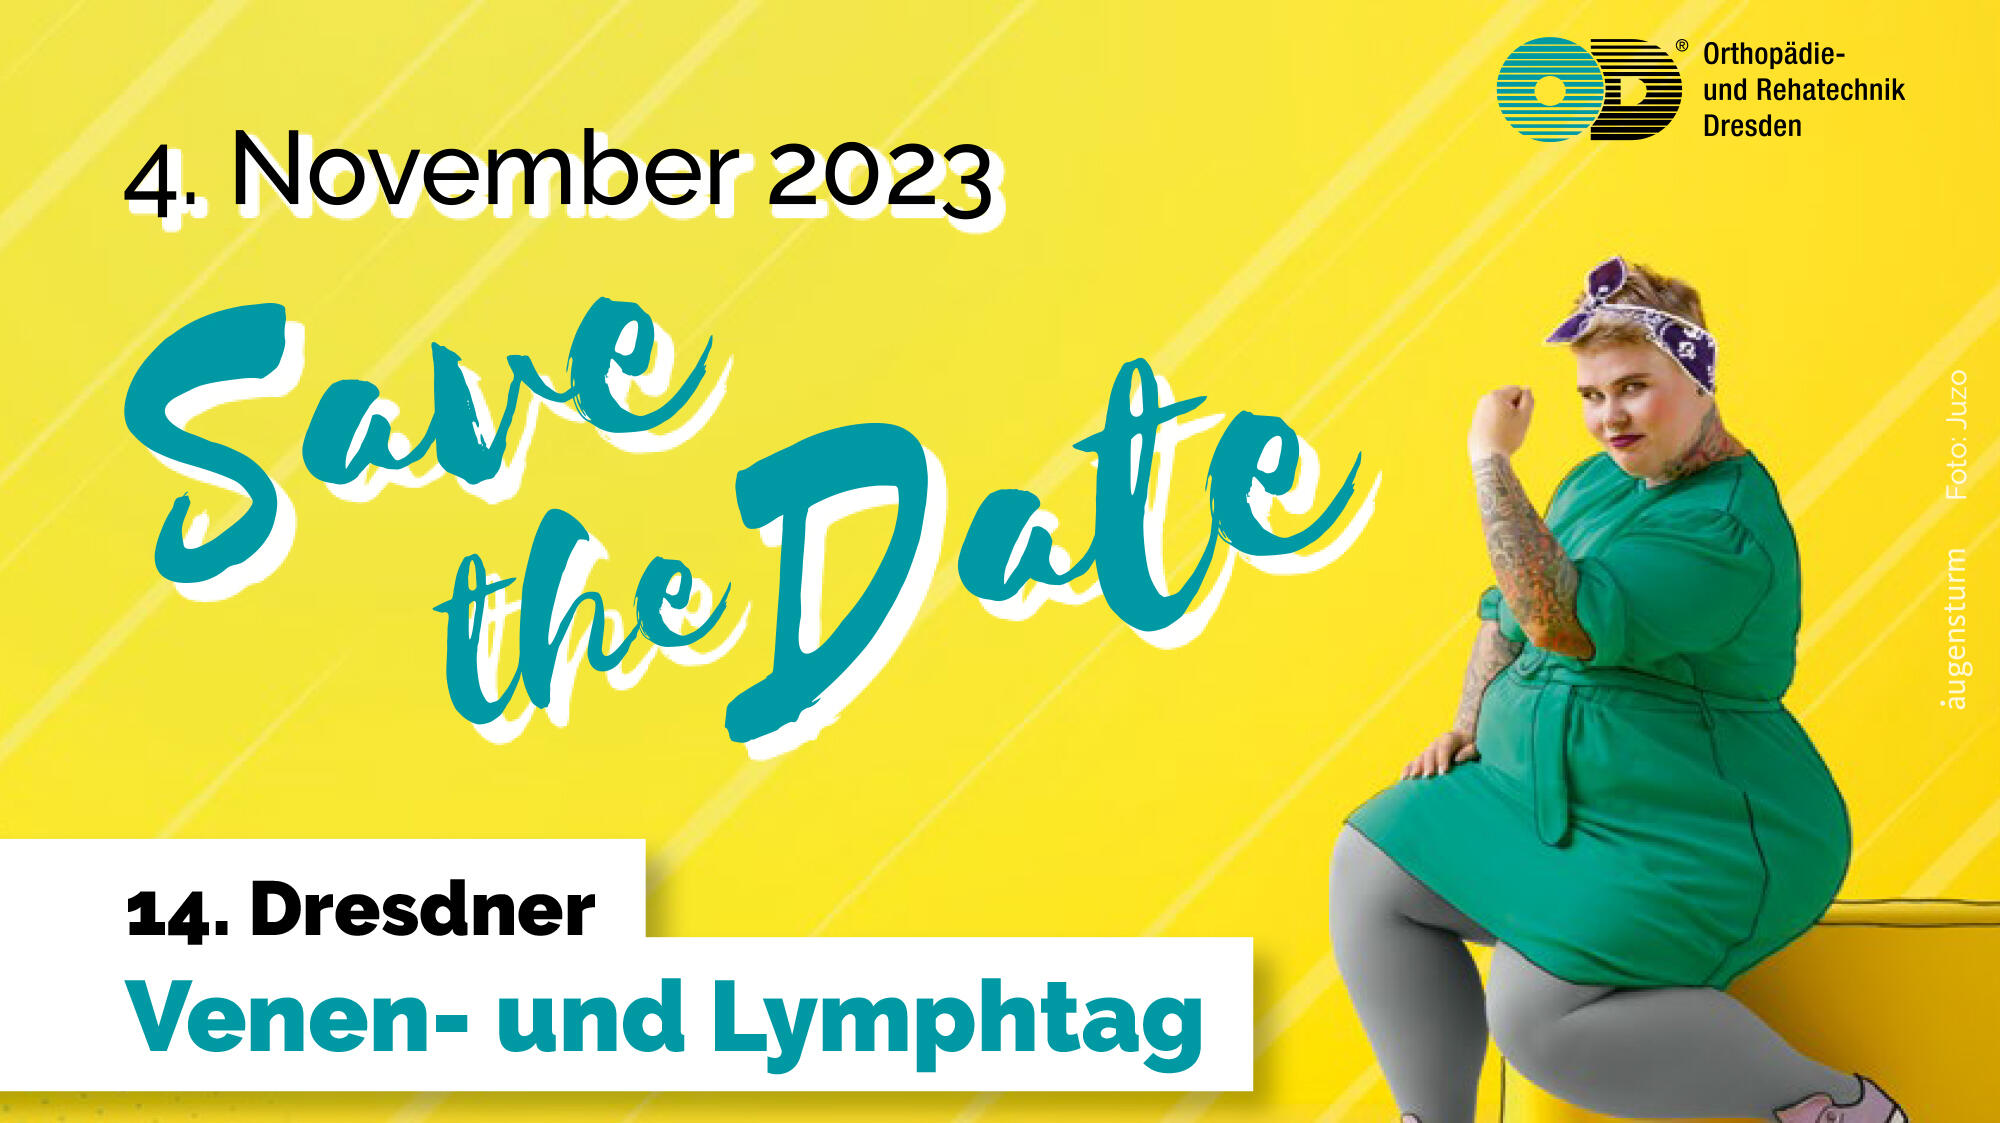 14. Venen und Lymphtag am 4.11.2023 - Save the Date mit gelben Hintergrund und einer starken Frau sitzend